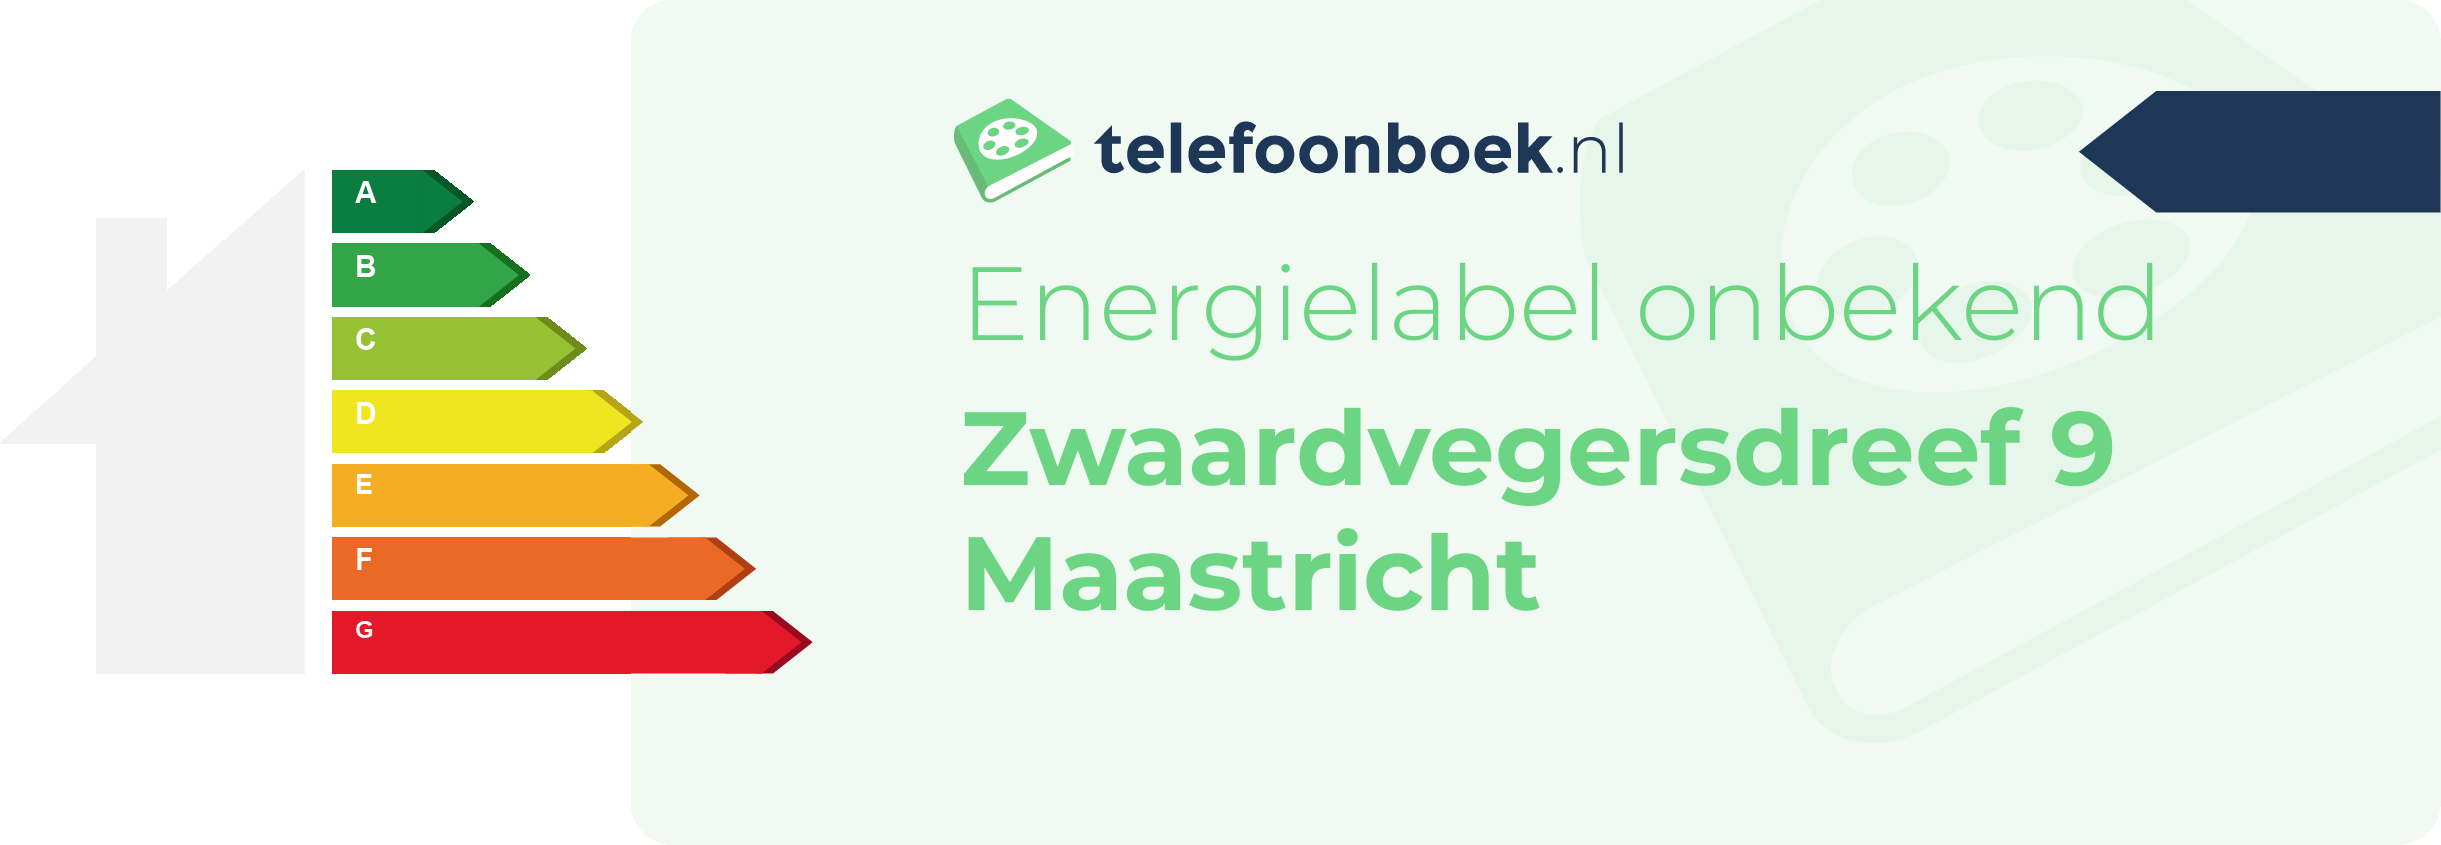 Energielabel Zwaardvegersdreef 9 Maastricht